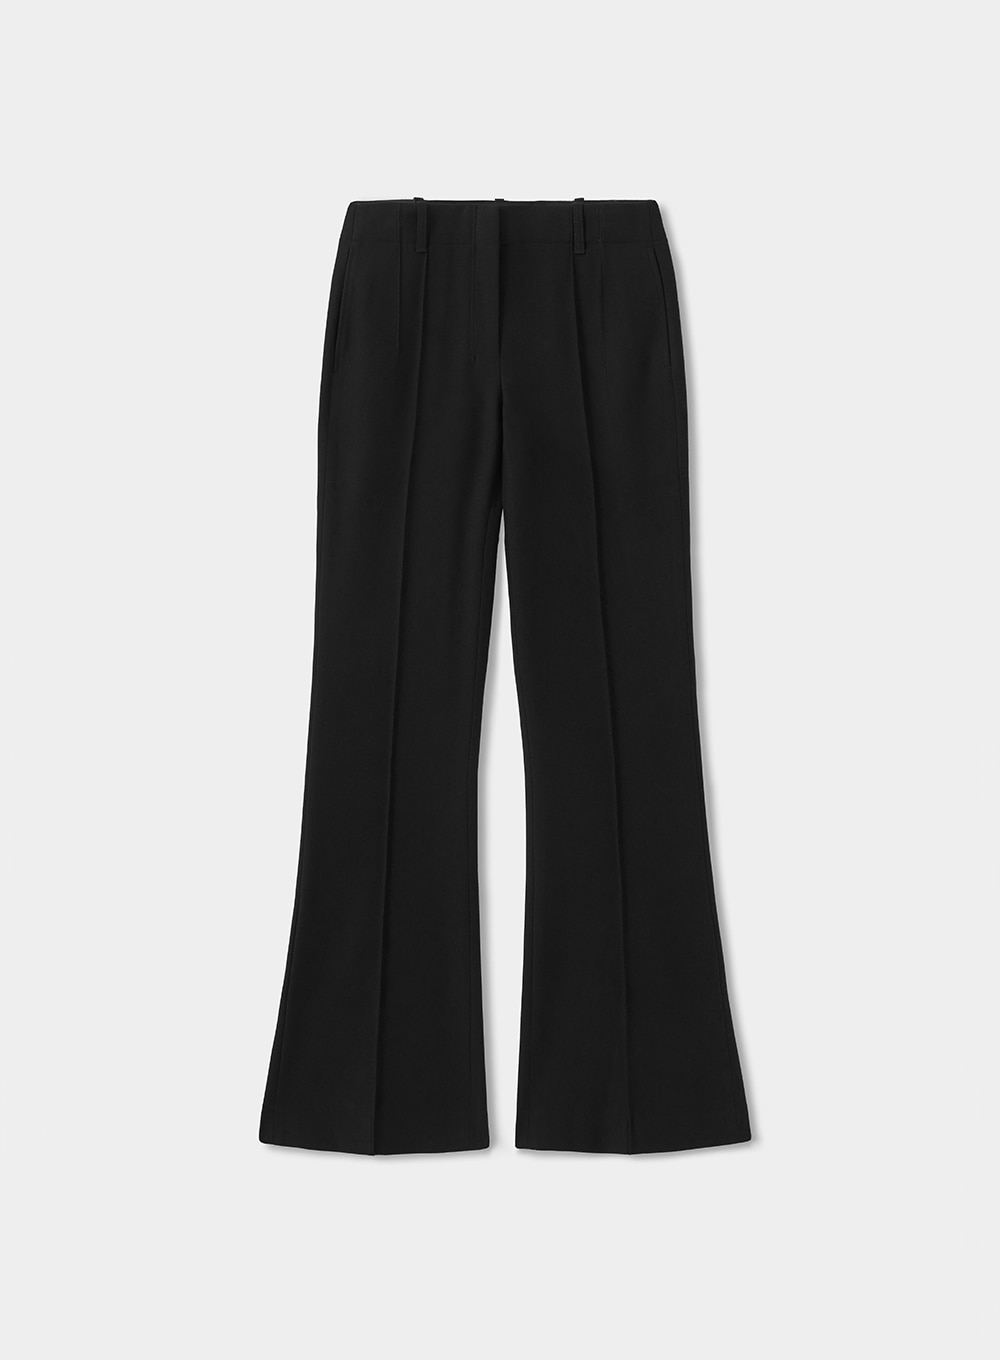 Brill Twill Flare Pants - Neutral Black